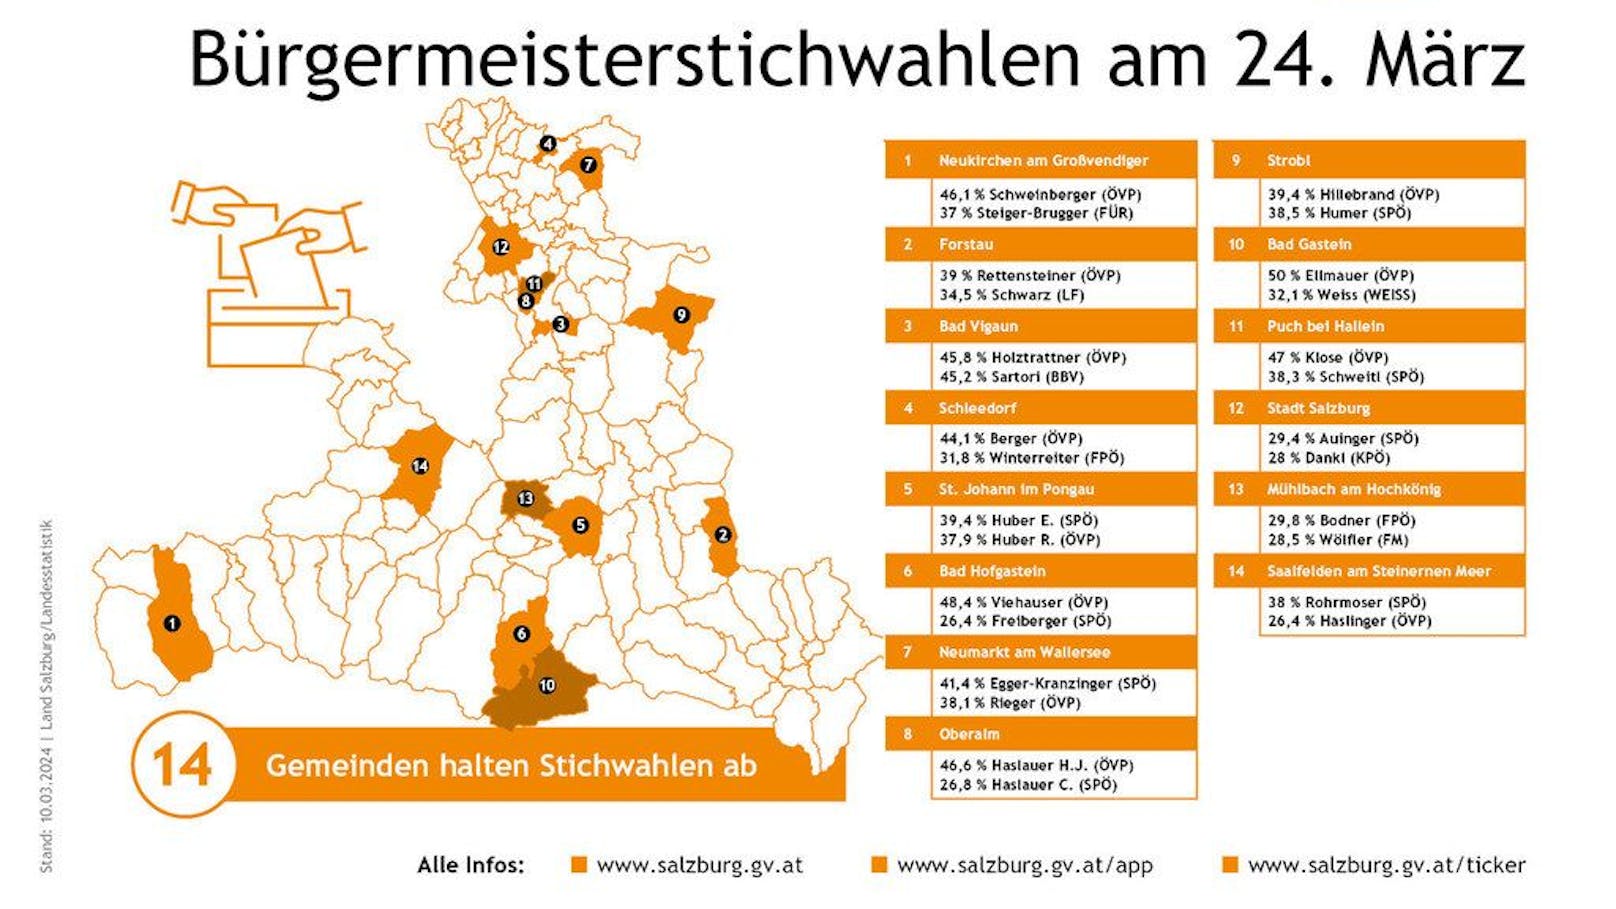  In 14 Salzburger Gemeinden fällt die Entscheidung, wer Bürgermeister oder Bürgermeisterin wird, bei der Stichwahl am 24. März.